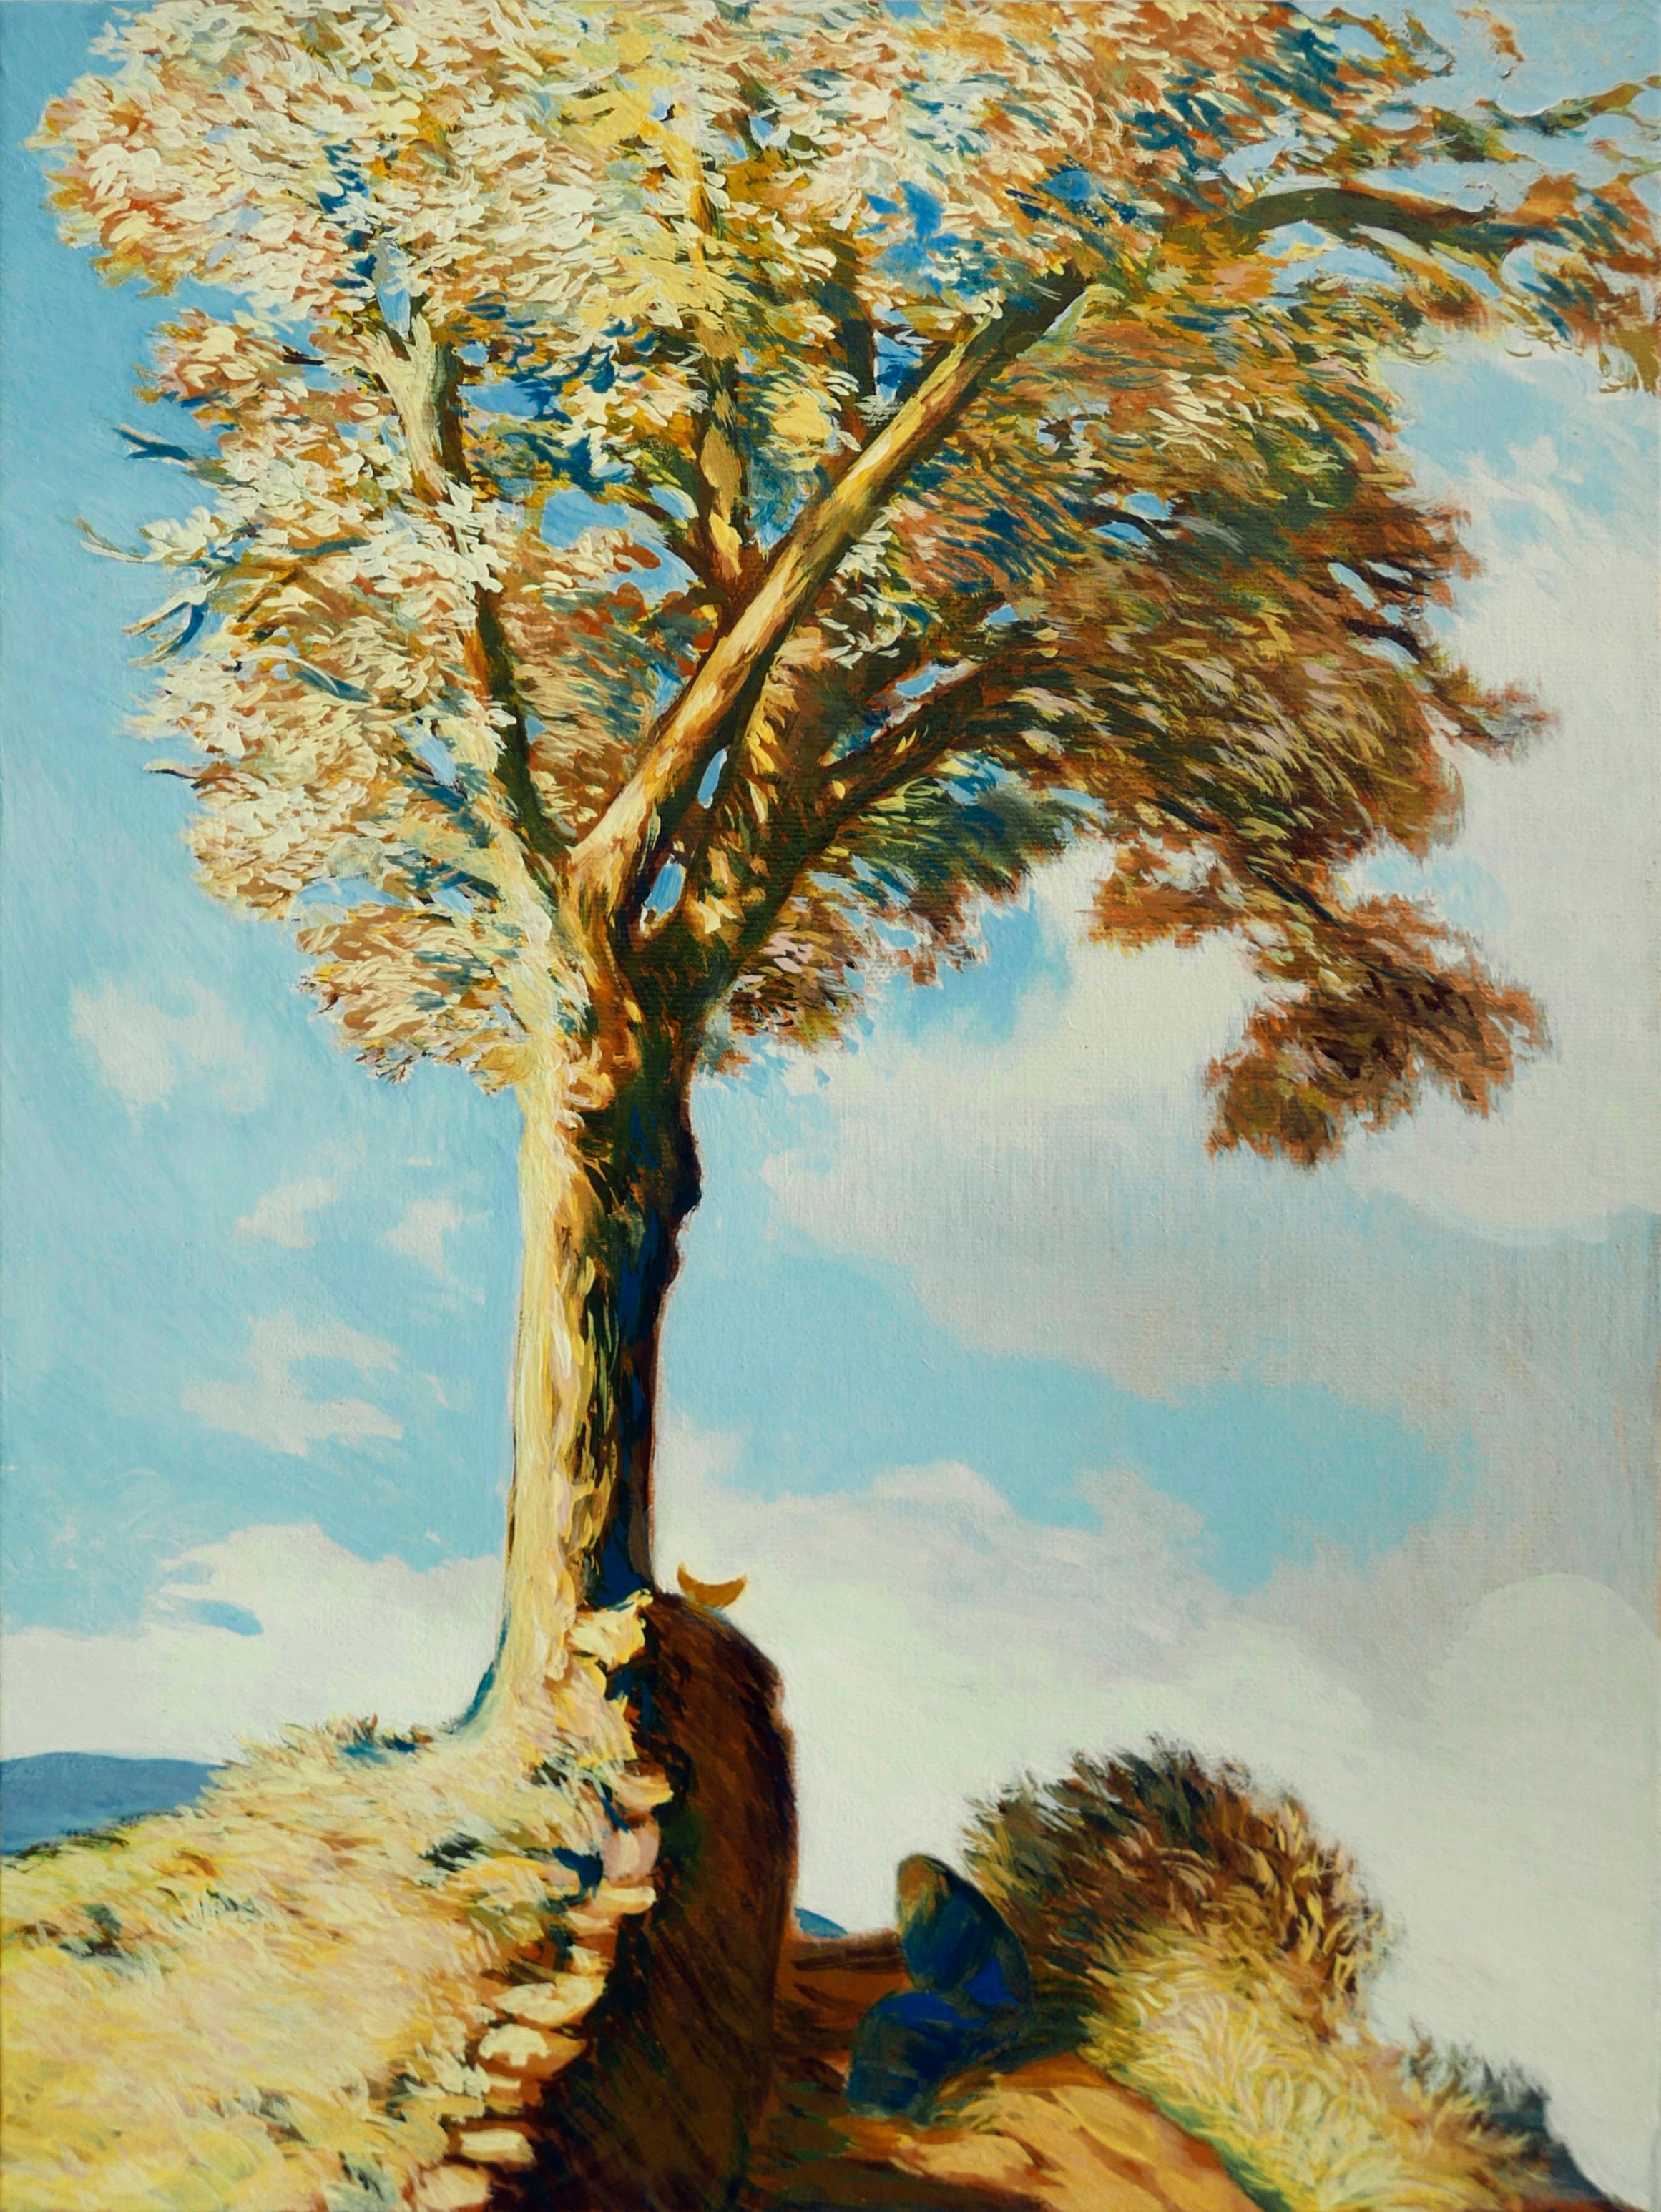 Landscape Painting Petya Deneva - L'arbre de la connaissance - Peinture à l'huile Couleurs Blanc, jaune, orange, bleu, marron et vert